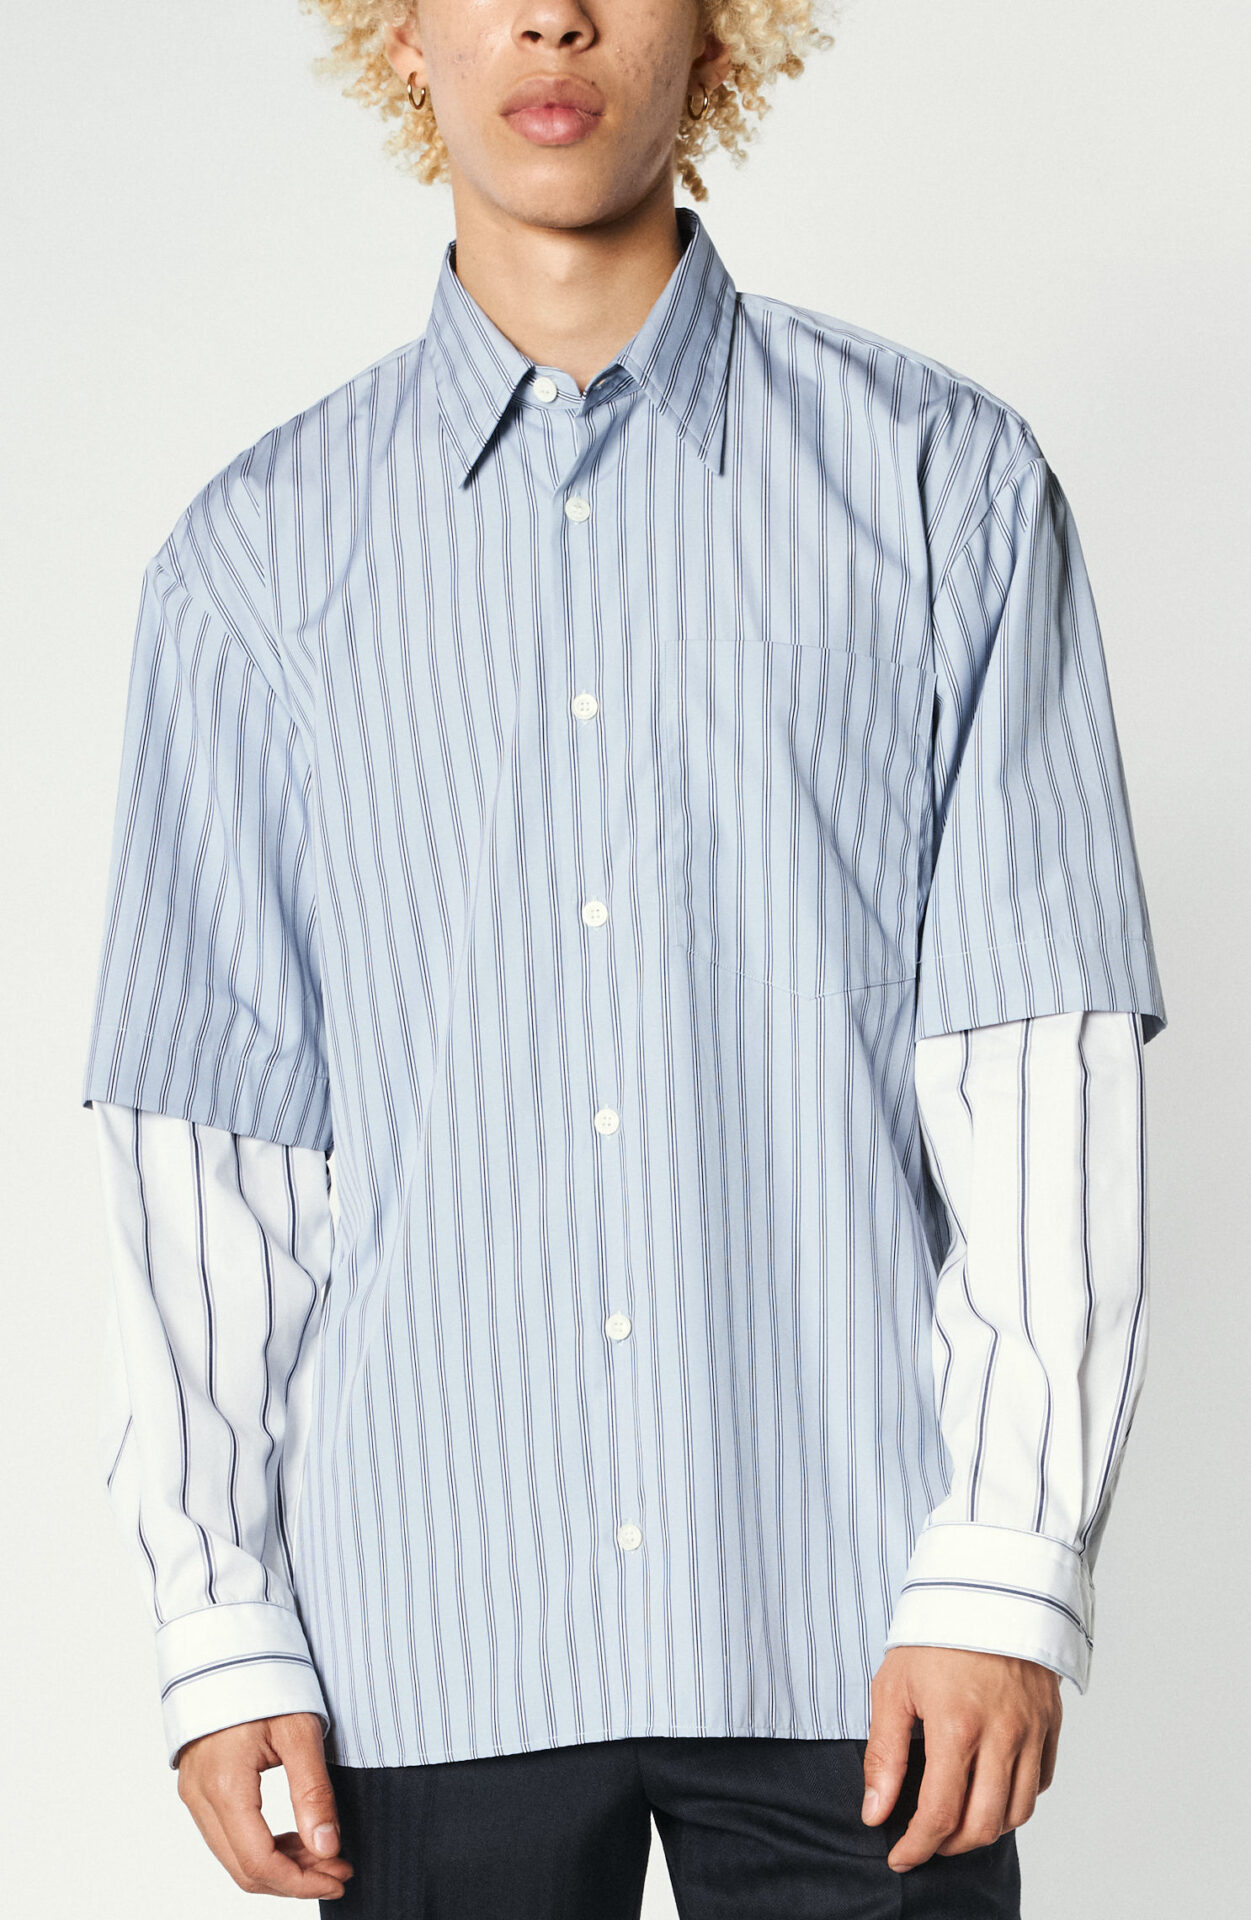 Dries van Noten - Striped shirt 